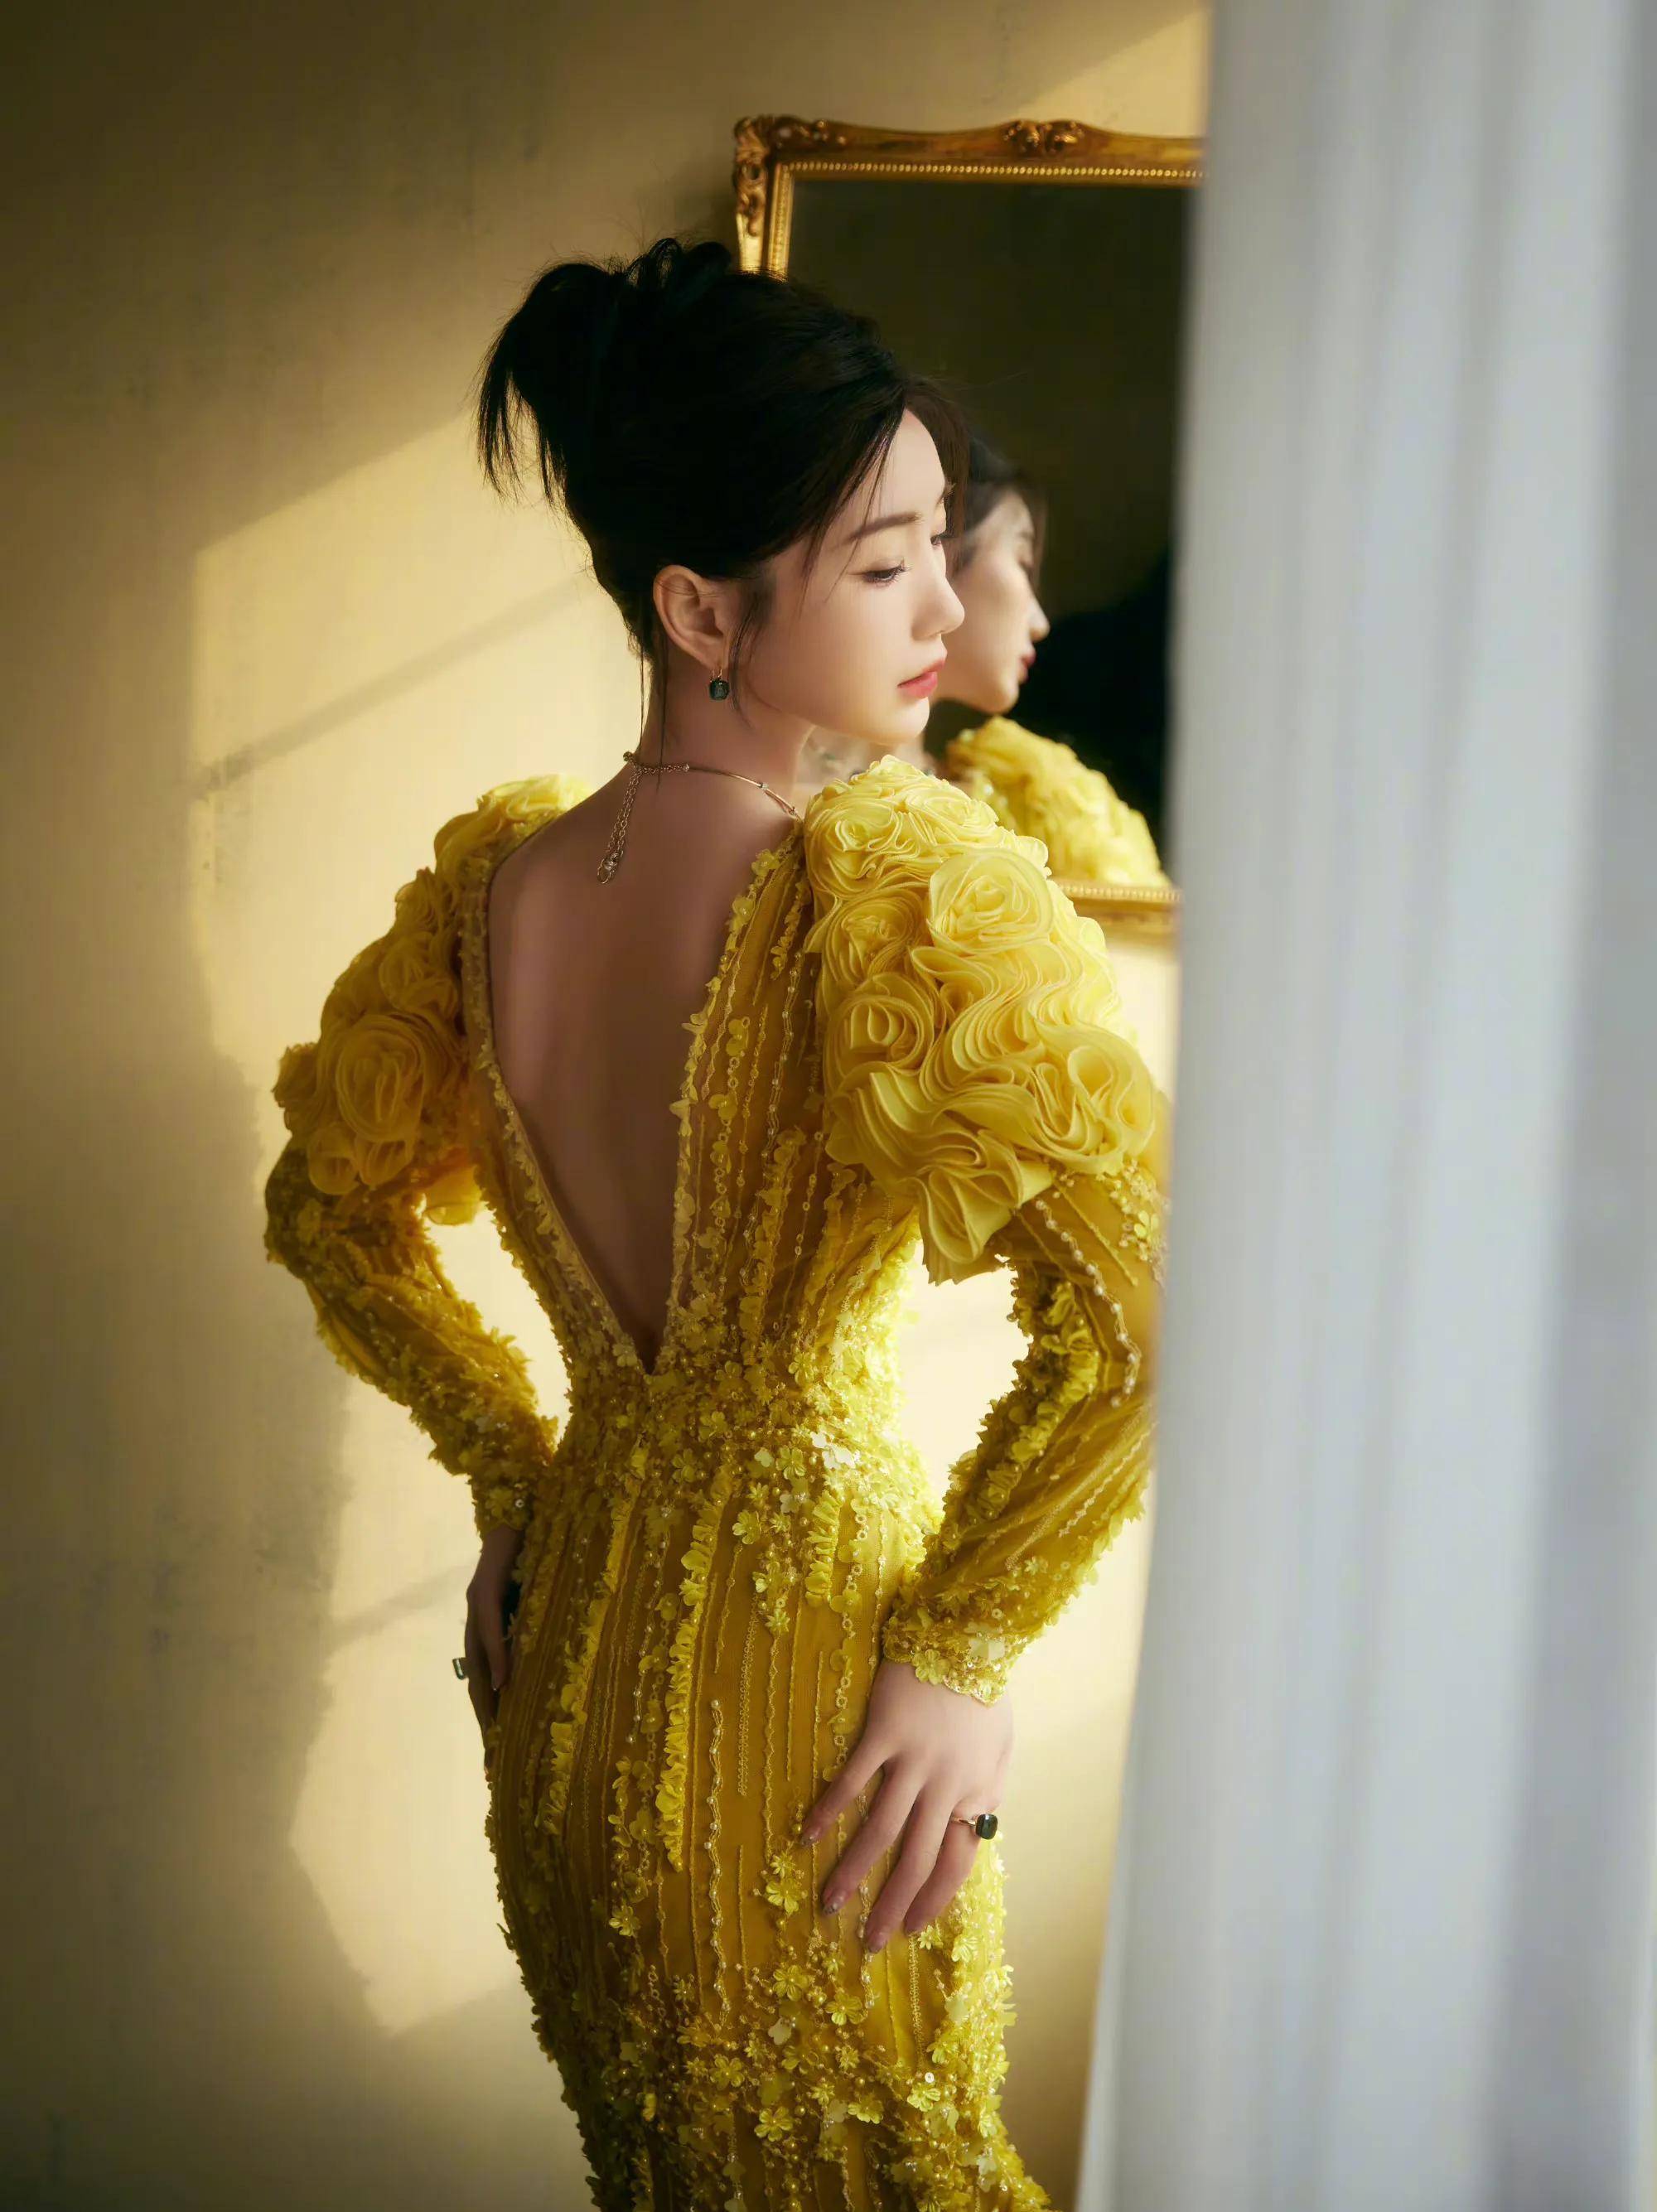 毛晓彤国剧盛典红毯造型曝光,一袭鹅黄色礼服,美丽动人